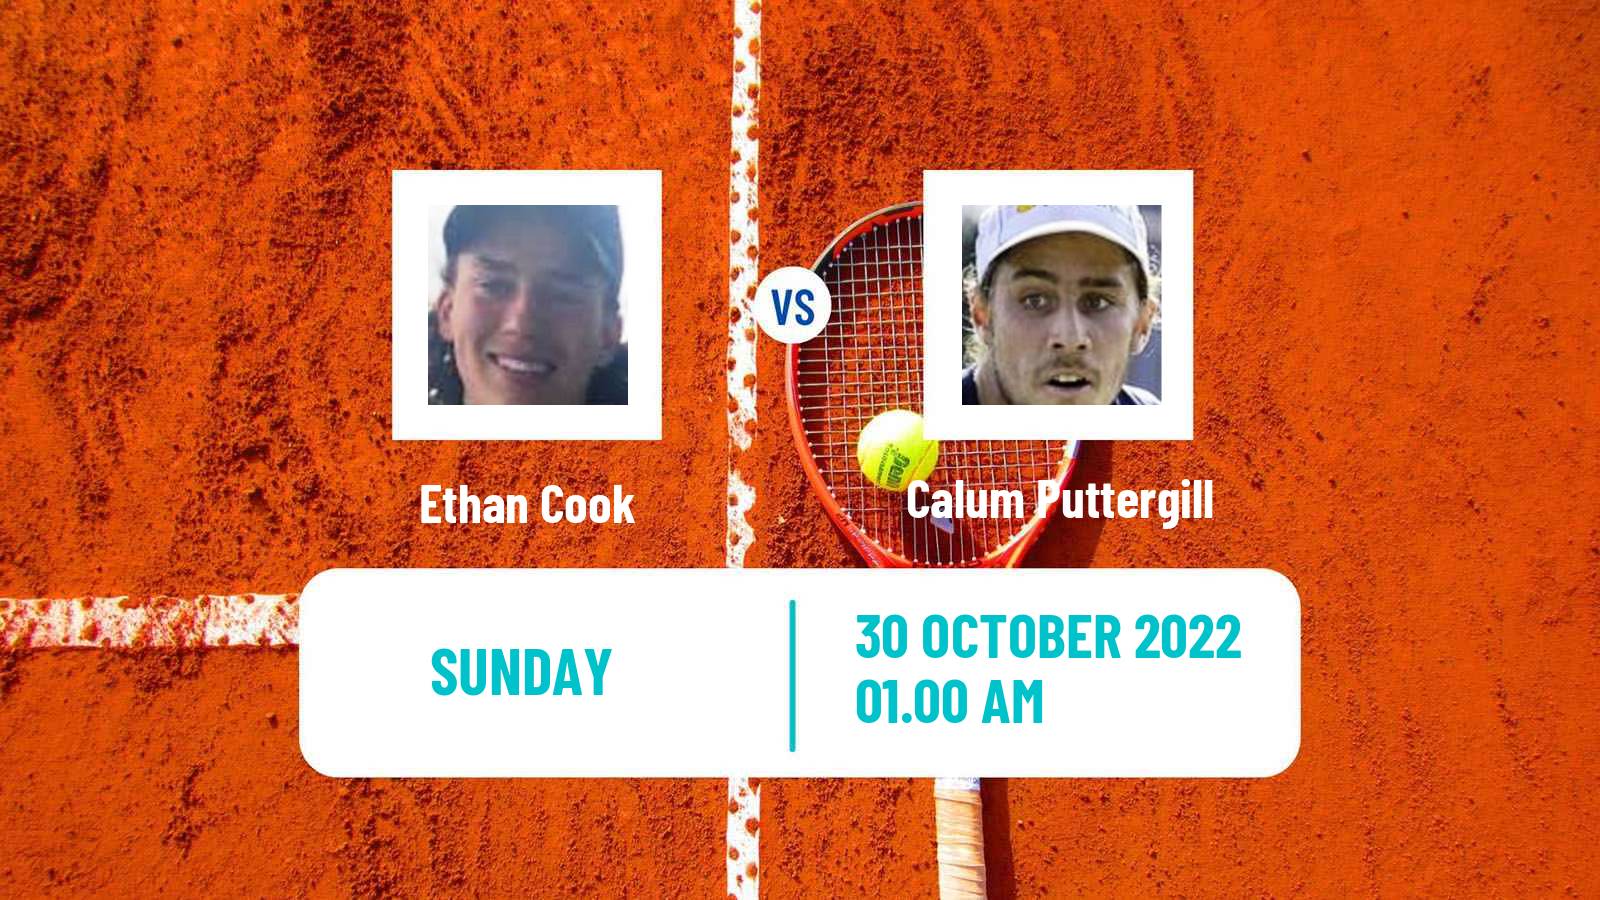 Tennis ATP Challenger Ethan Cook - Calum Puttergill